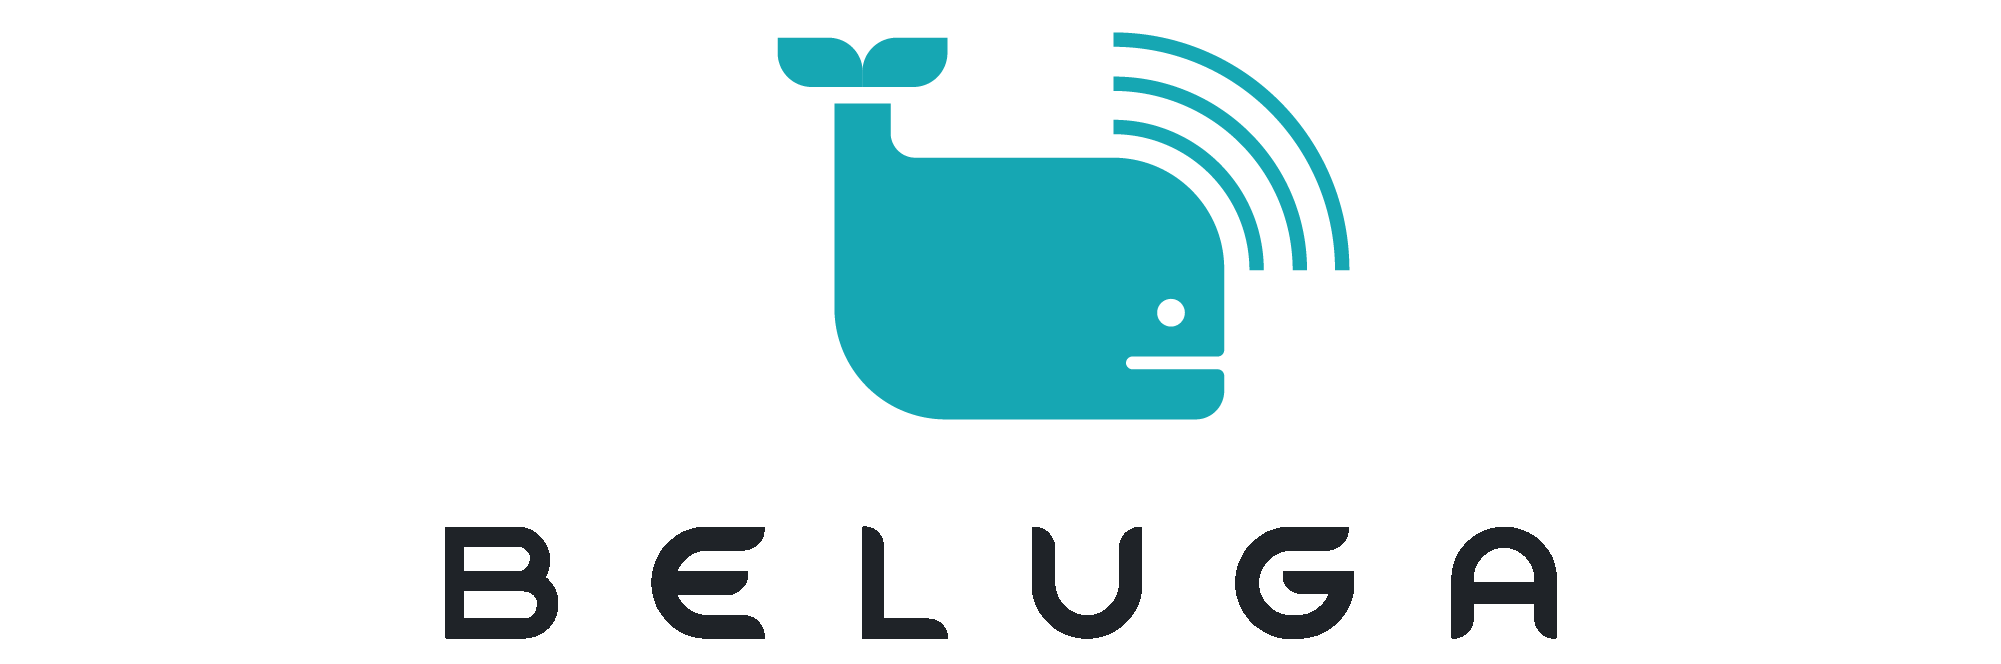 Beluga  documentation - Home